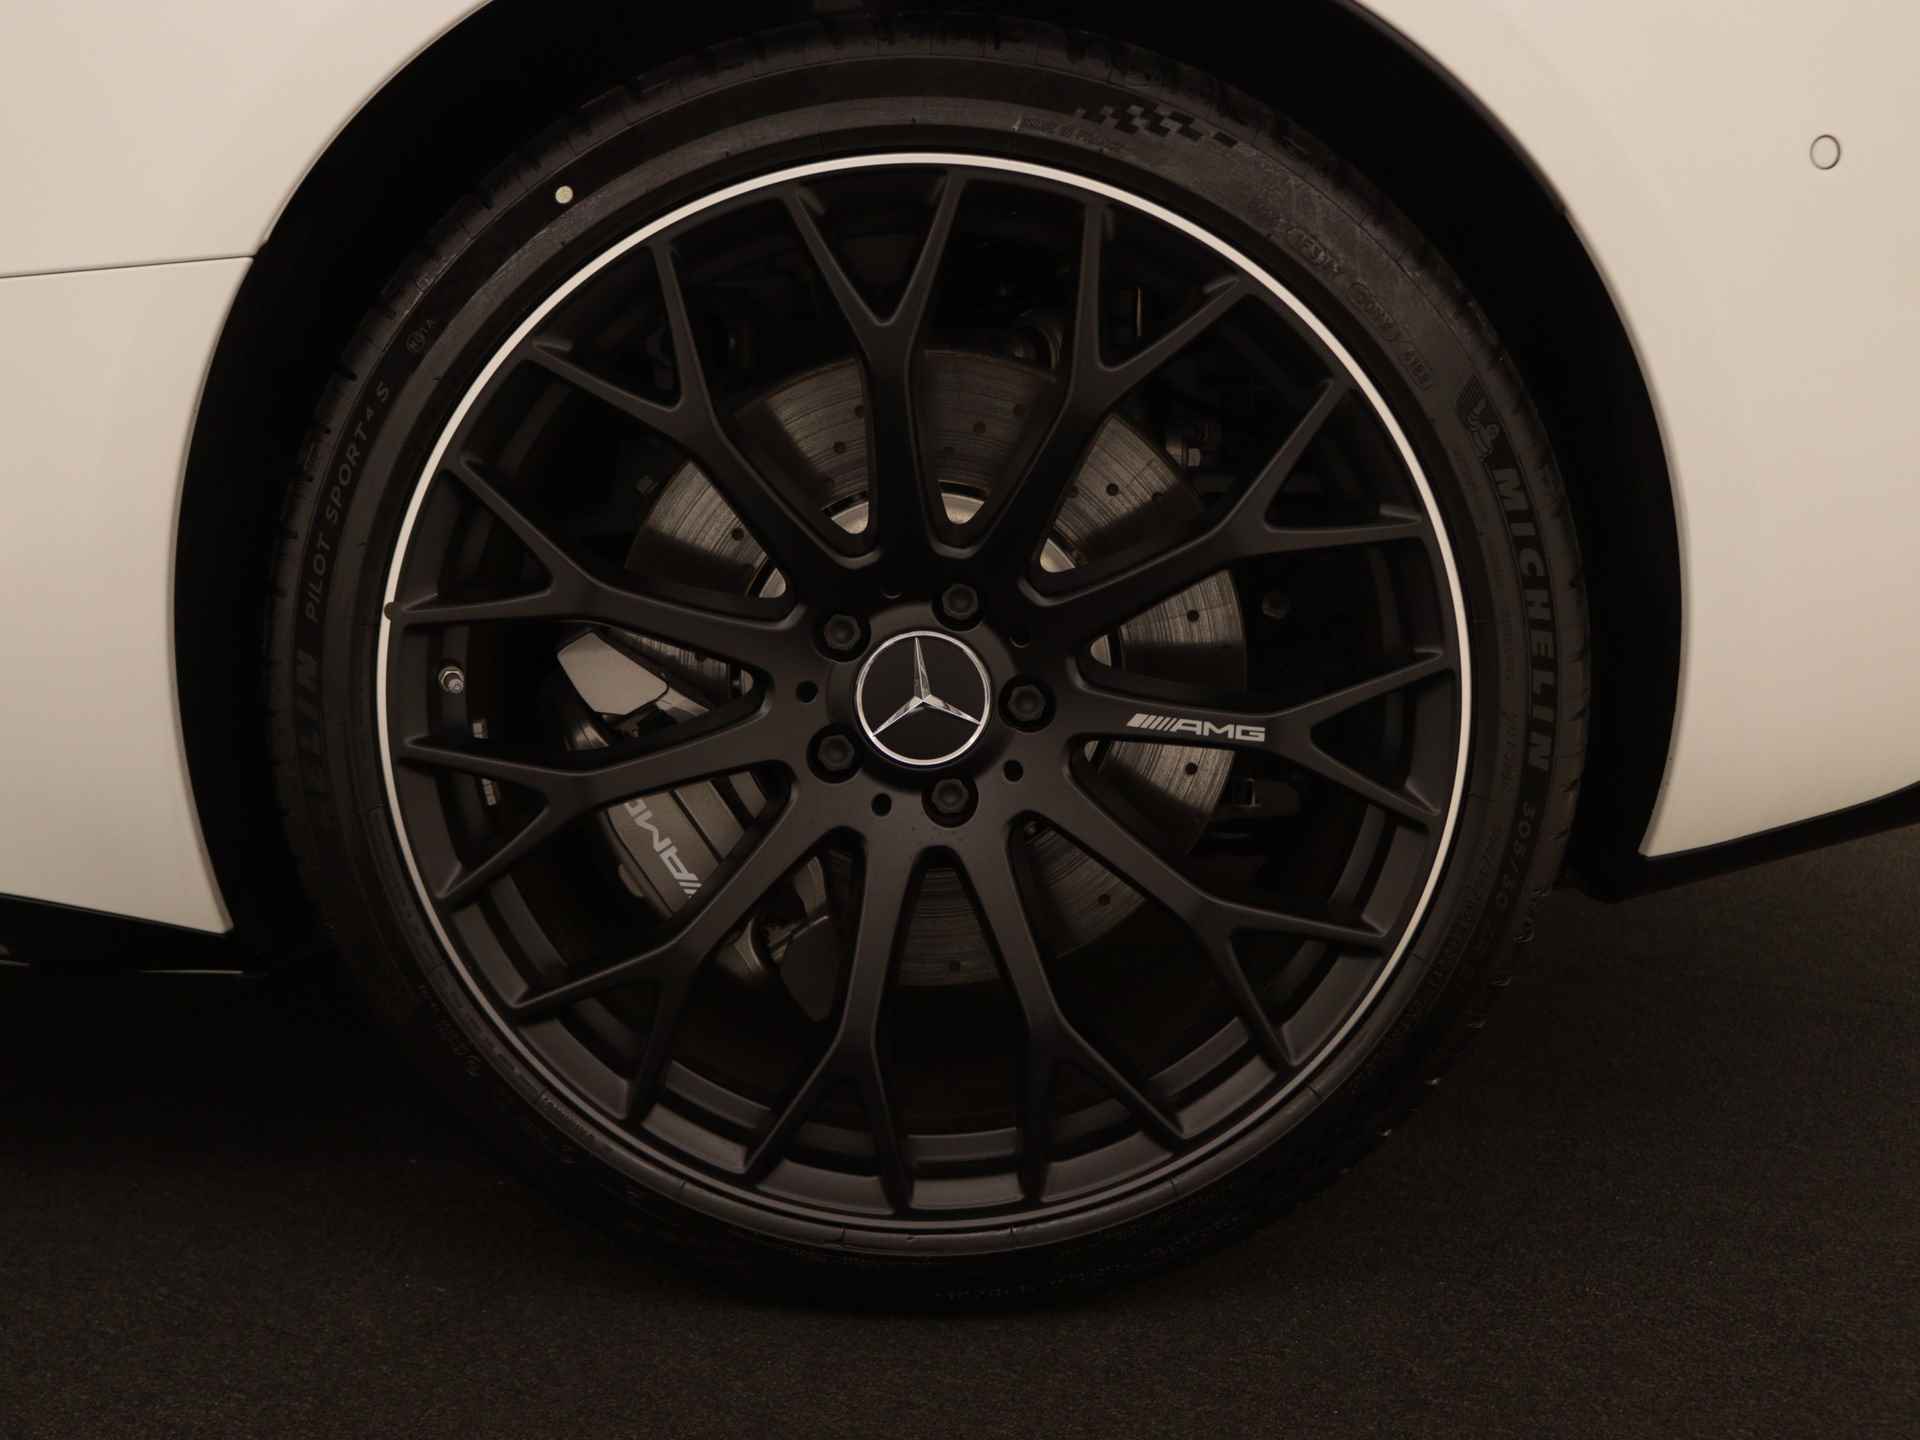 Mercedes-Benz SL-Klasse Roadster 43 | Premium Plus pakket | 21" lichtmetalen AMG-velgen met Y-design, zwart | AMG Nightpakket | ENERGIZING-pakket plus | Burmester Surround Sound systeem | Parkeerpakket met achteruitrijcamera | - 44/44